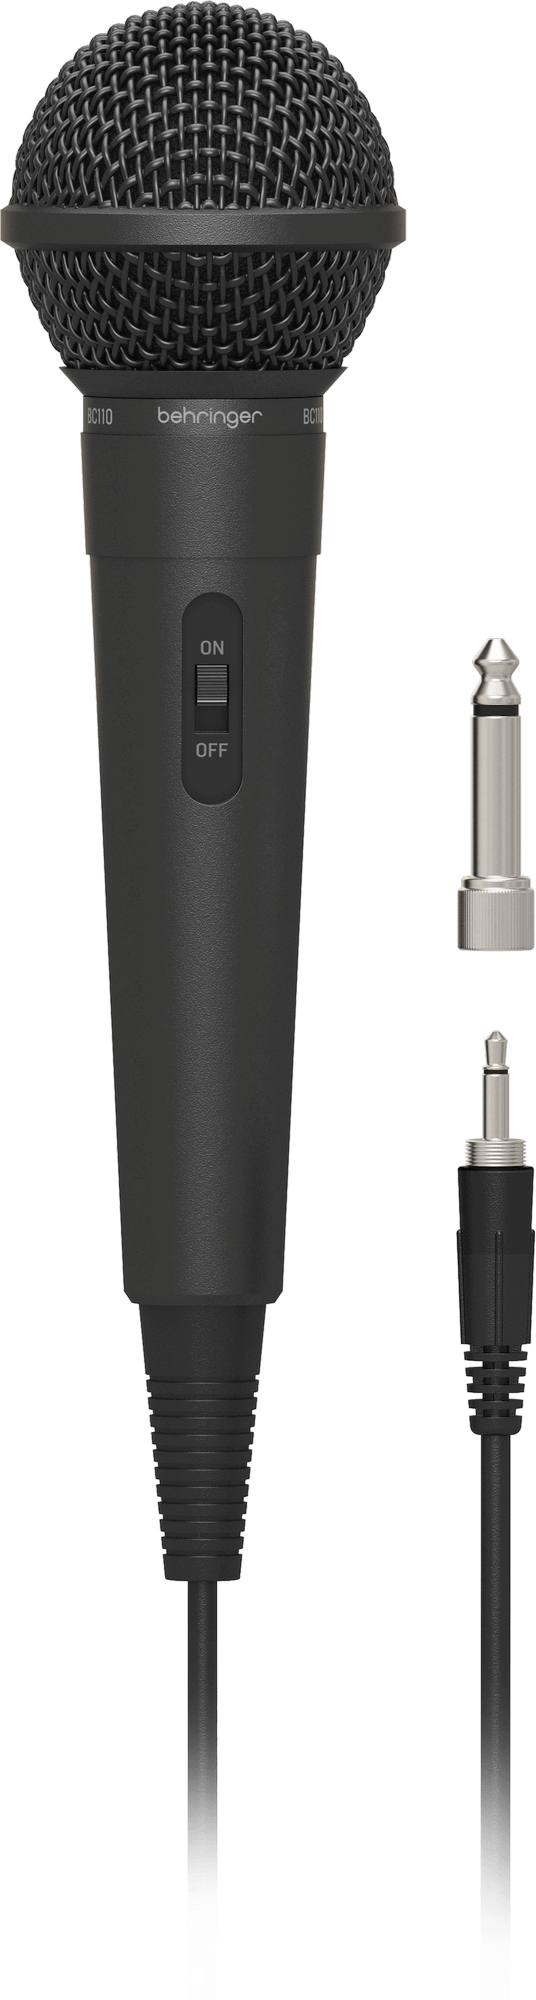 Behringer BC110 вокальный динамический кардиоидный микрофон с выключателем и кабелем разъем TS 63 мм длина кабеля 3 м